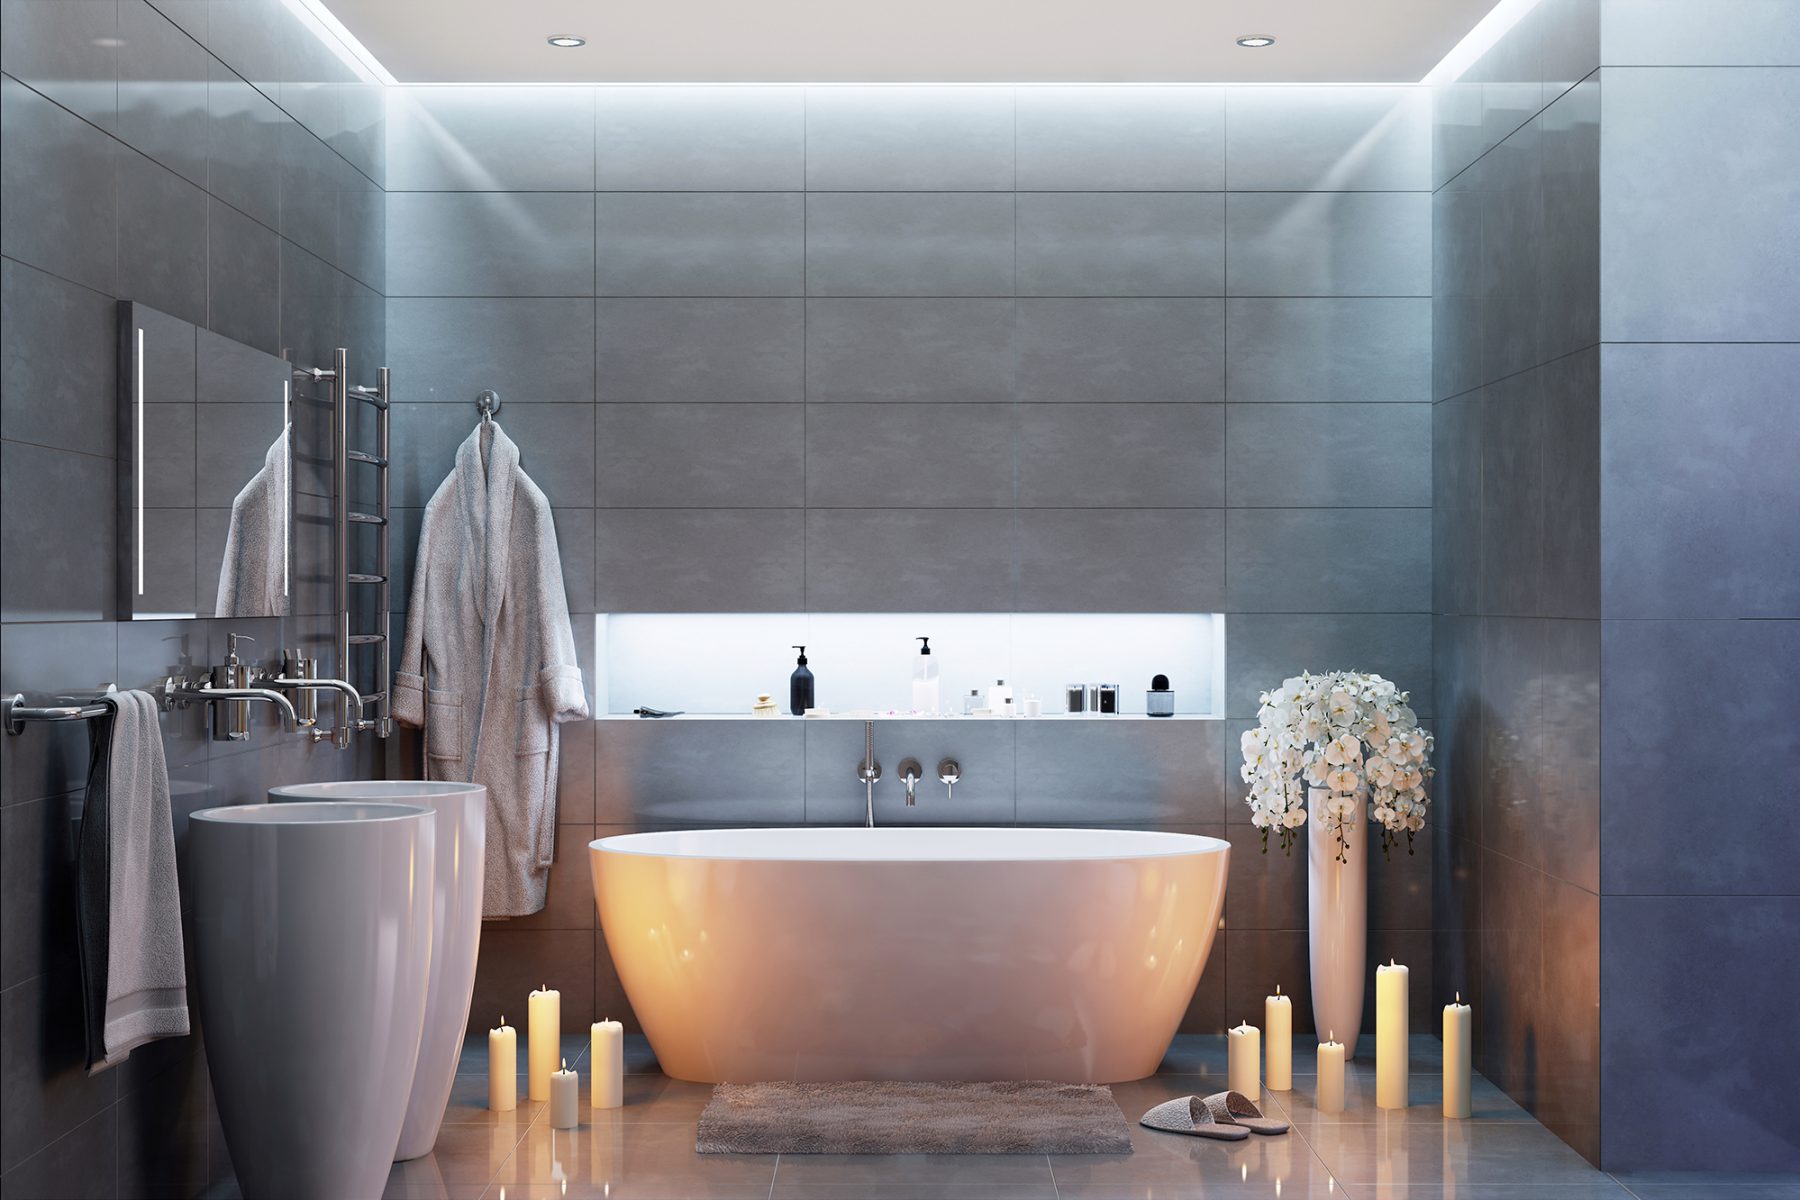 L'éclairage salle de bains LED – conseils et idées élégantes